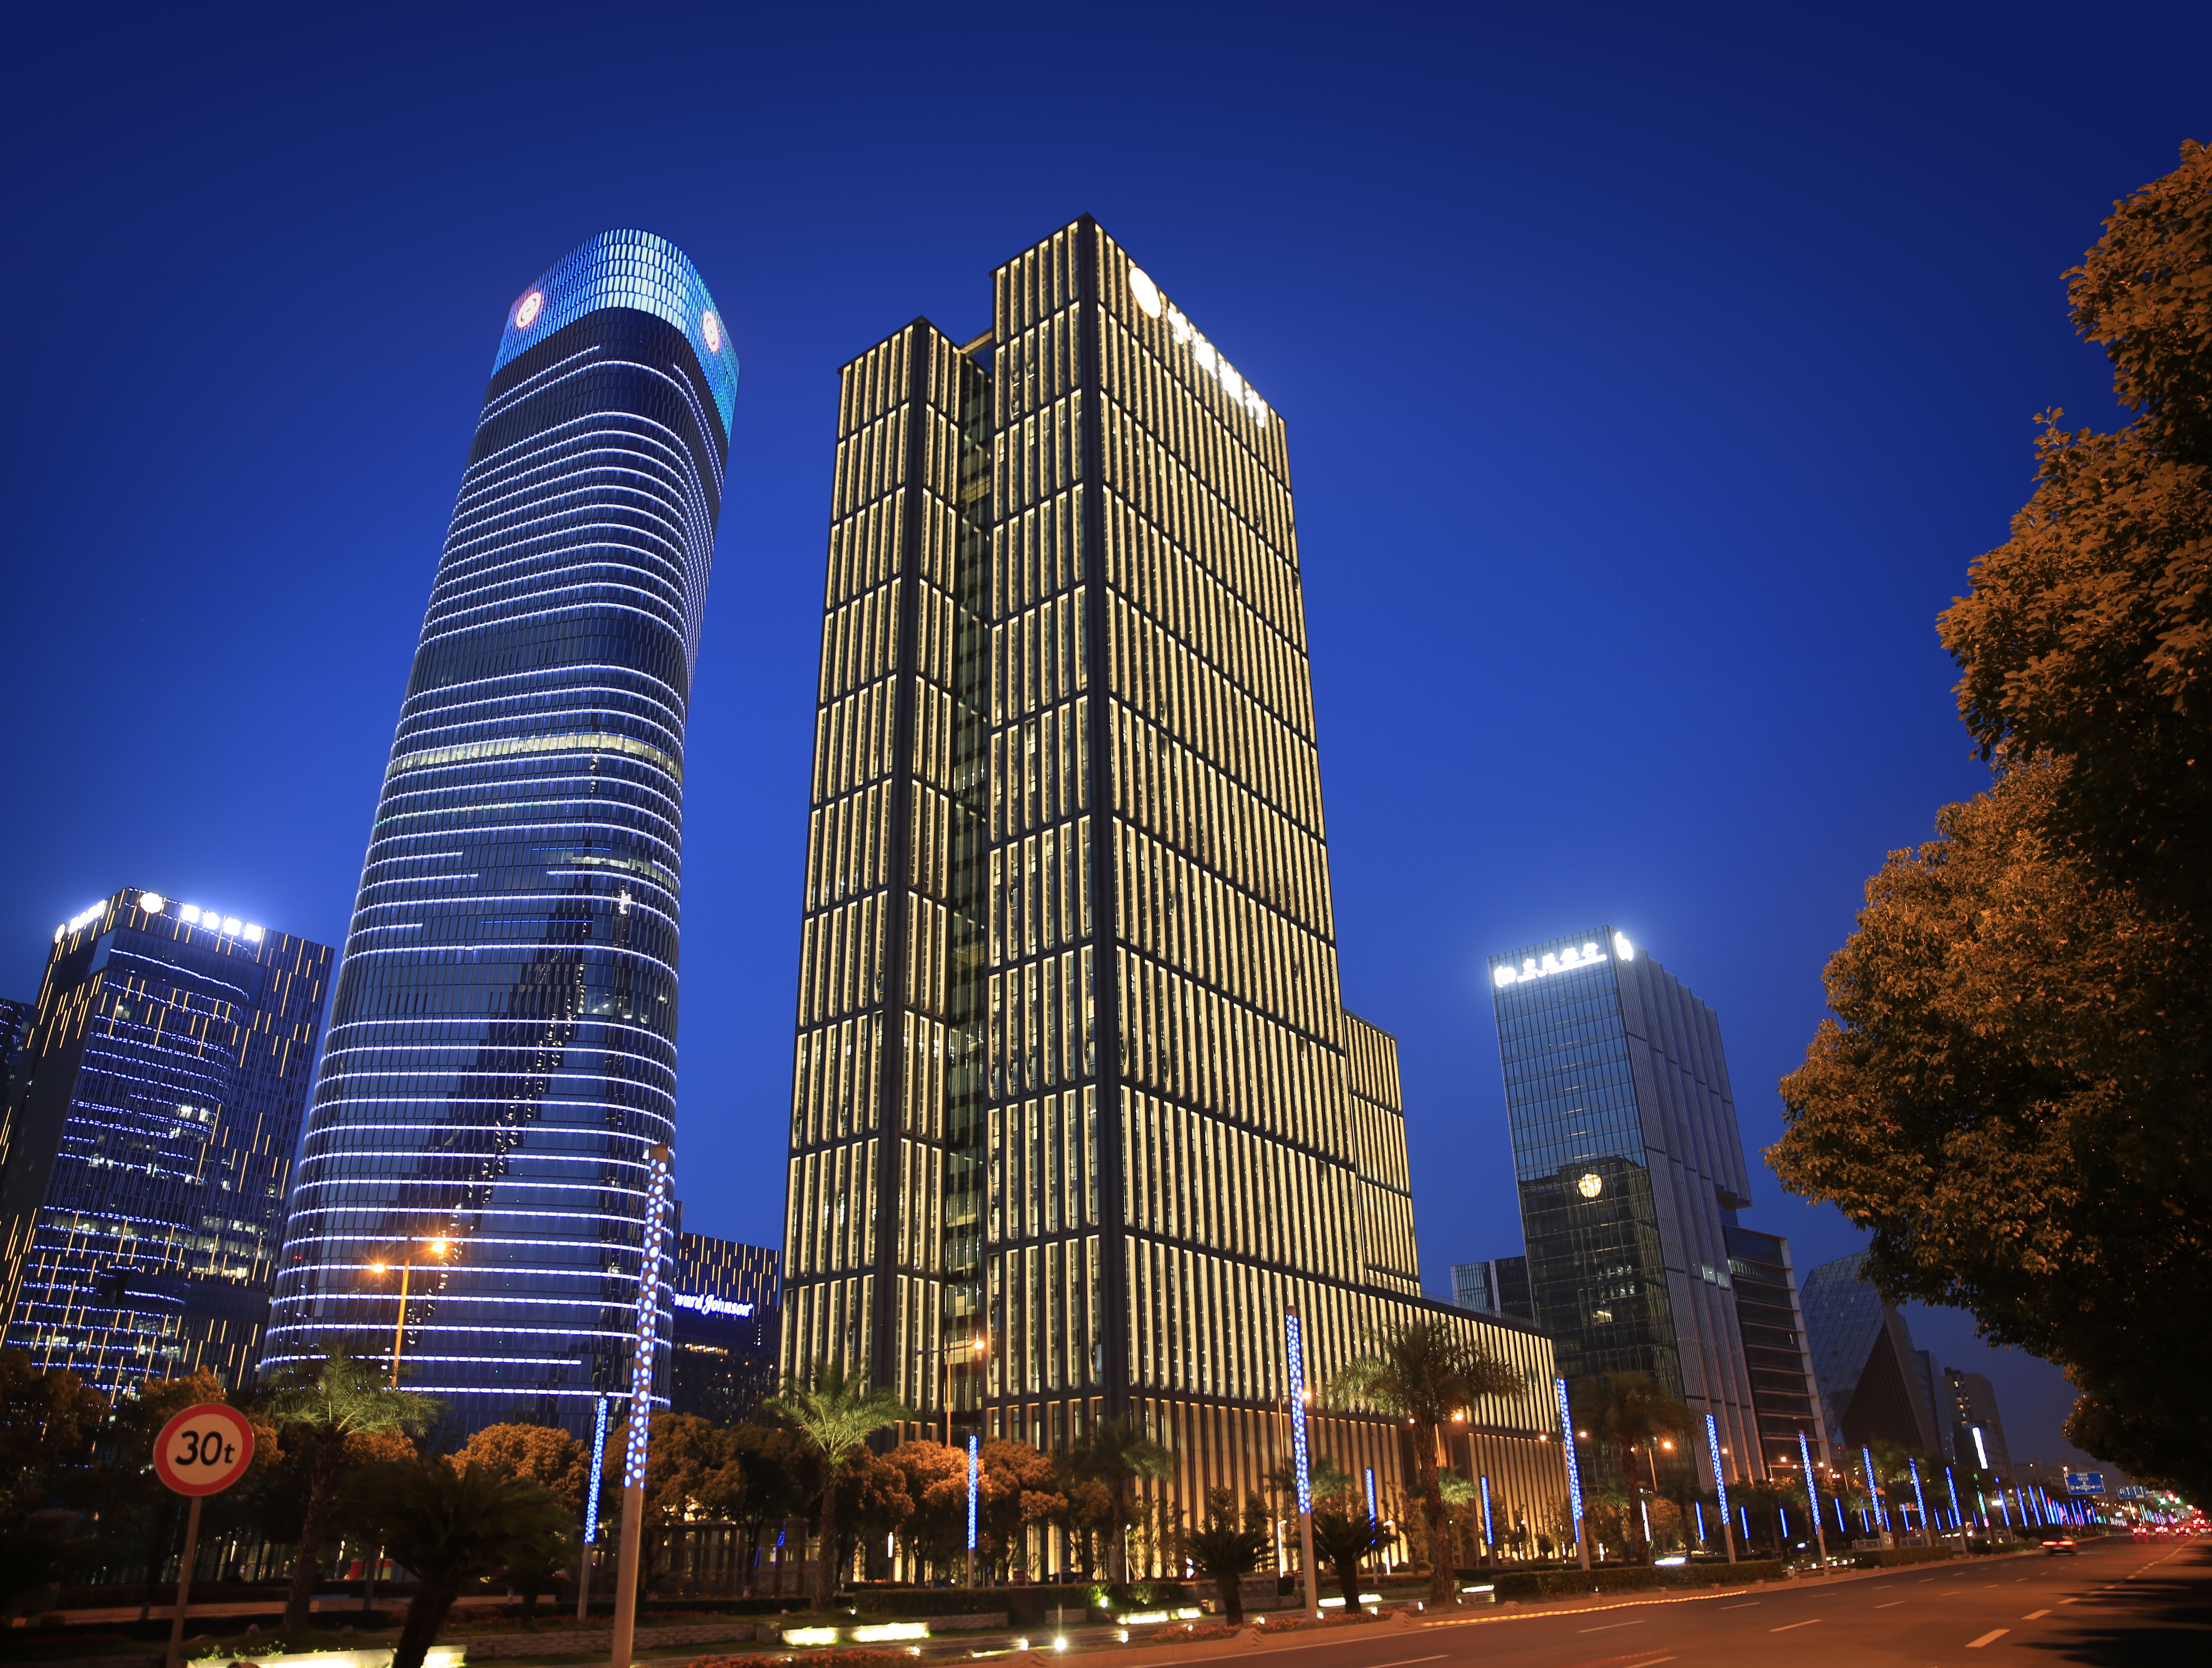 宁波银行总部大厦泛光照明工程——2020神灯奖申报工程